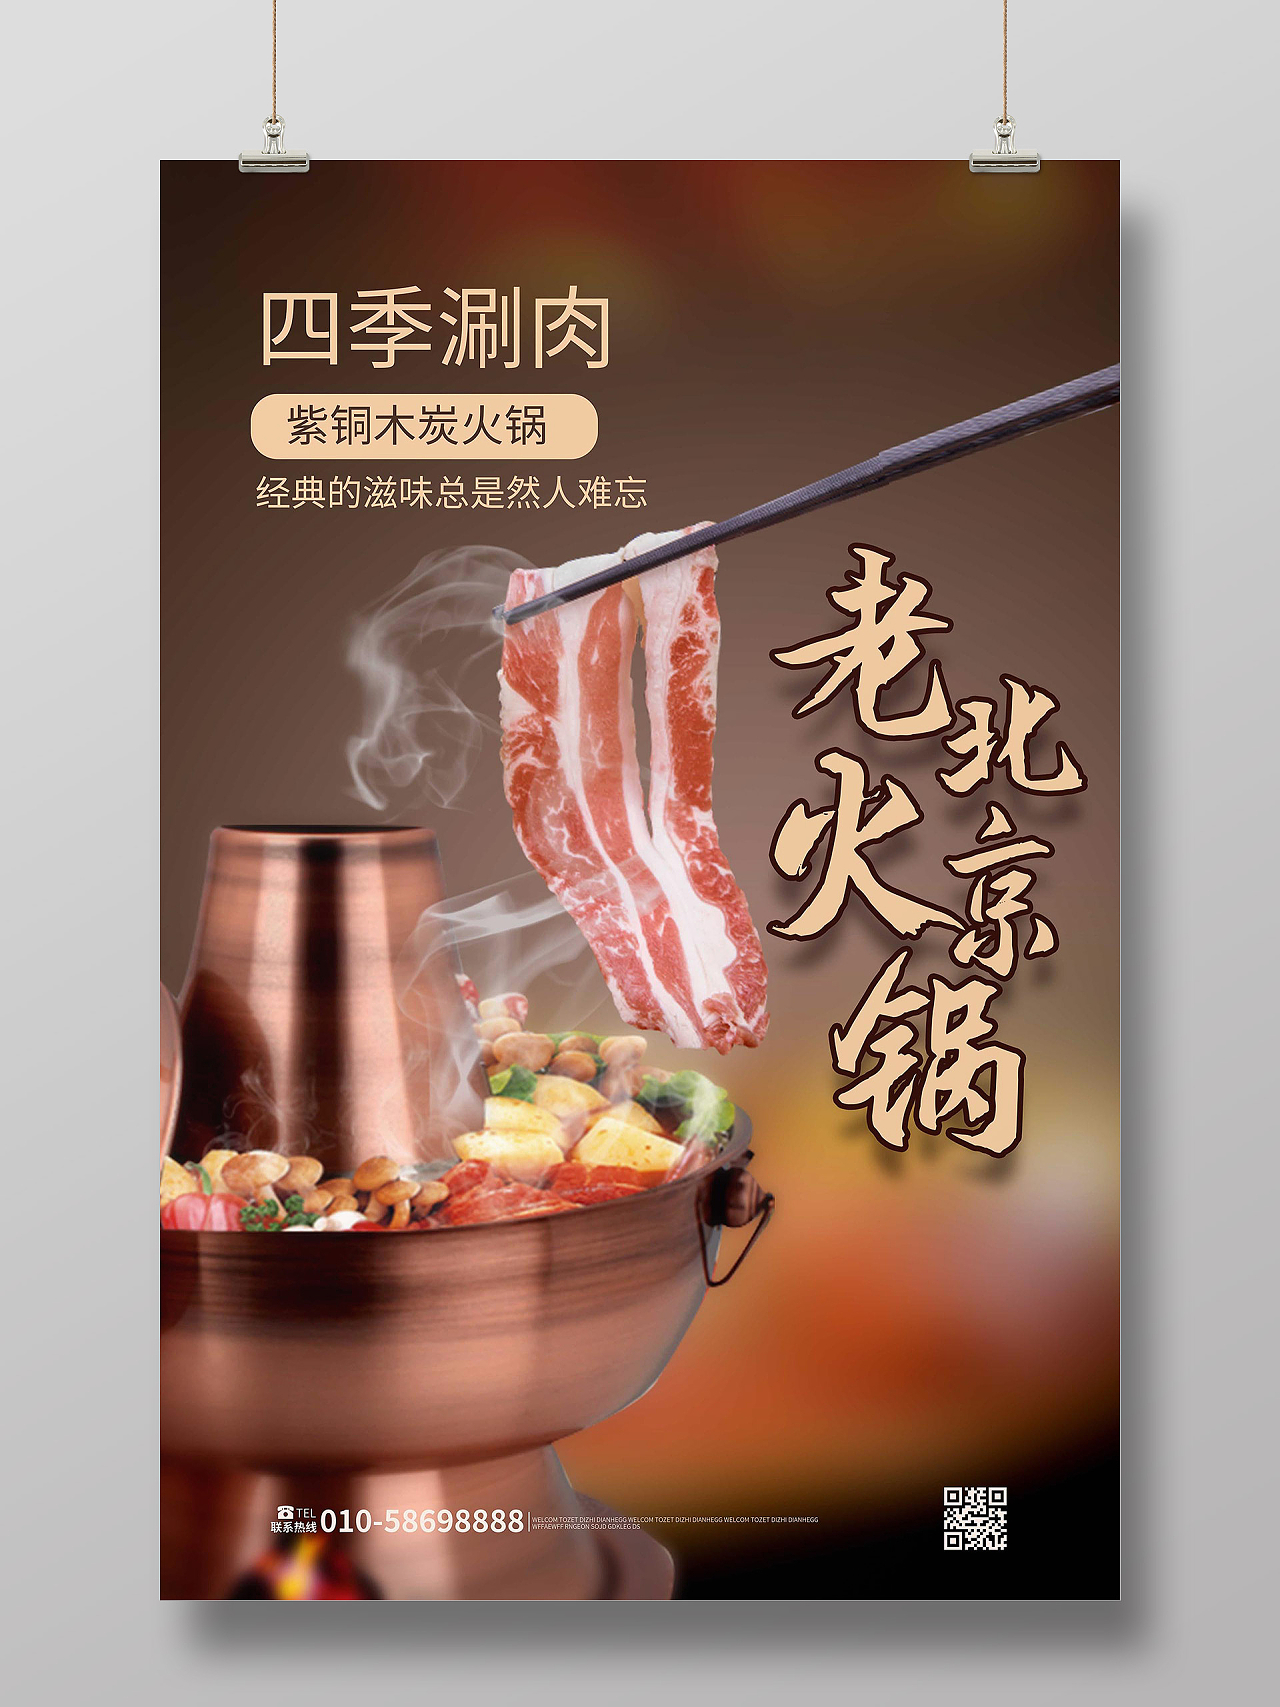 深棕色创意摄影风格老北京火锅餐饮美食宣传海报设计